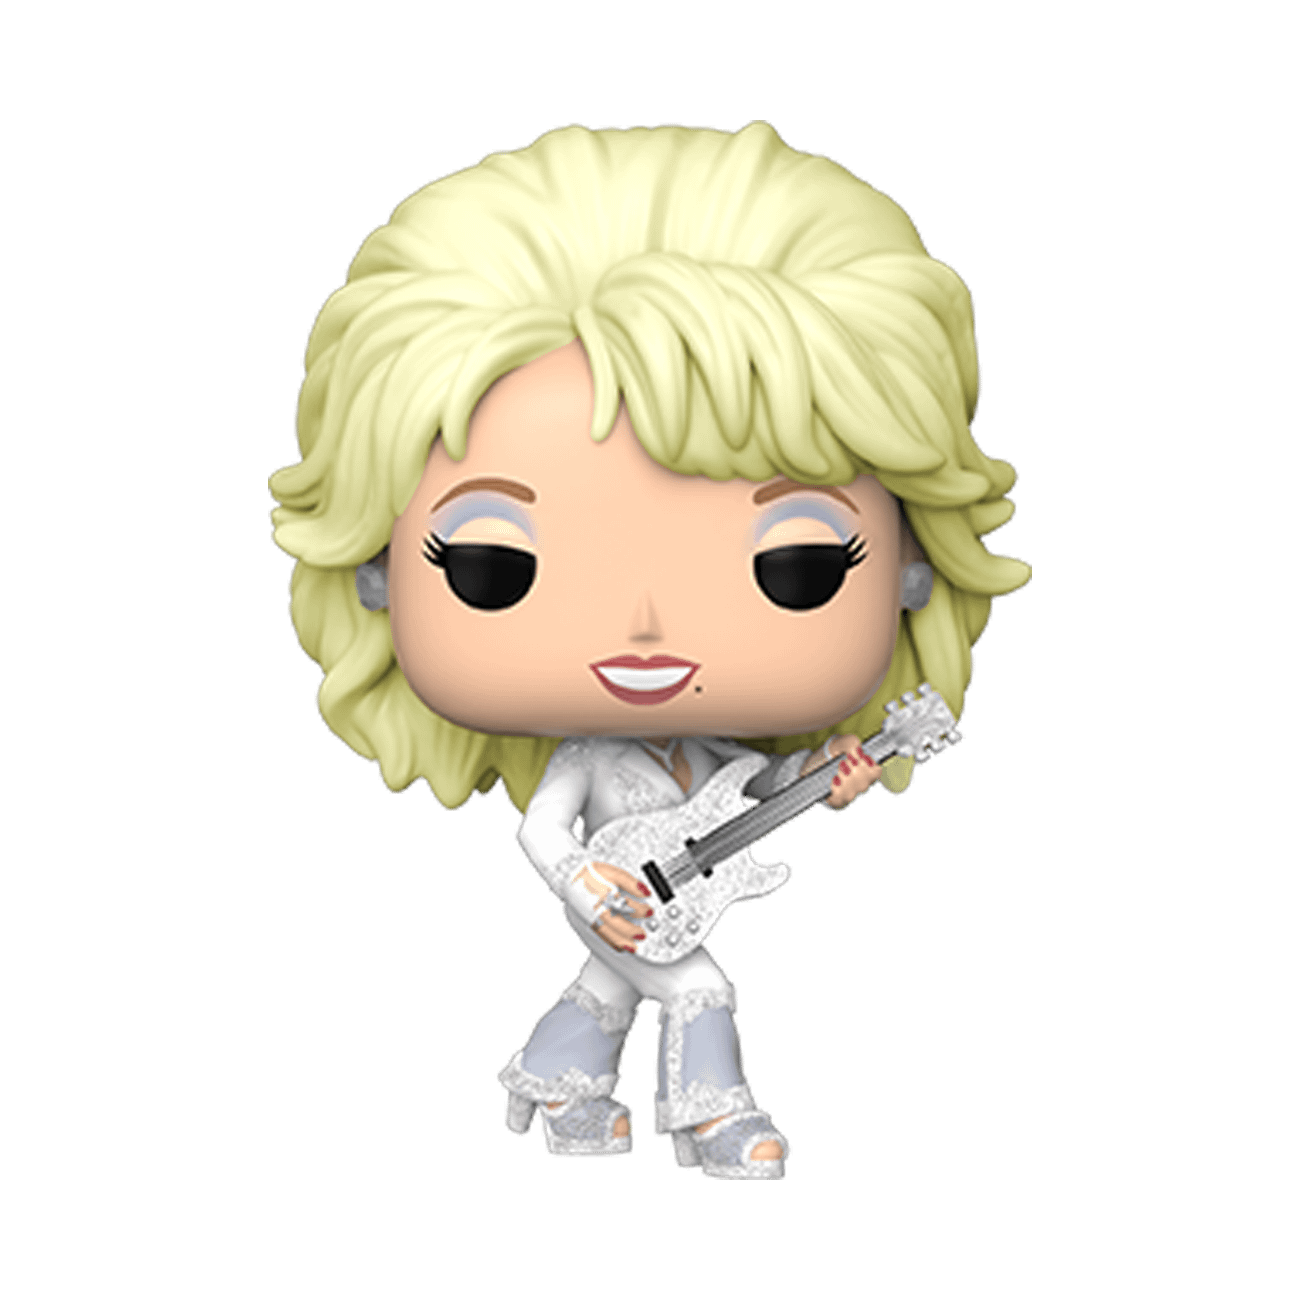 Funko's Dolly Parton Pop! Figures Invoke Icon's Signature Style